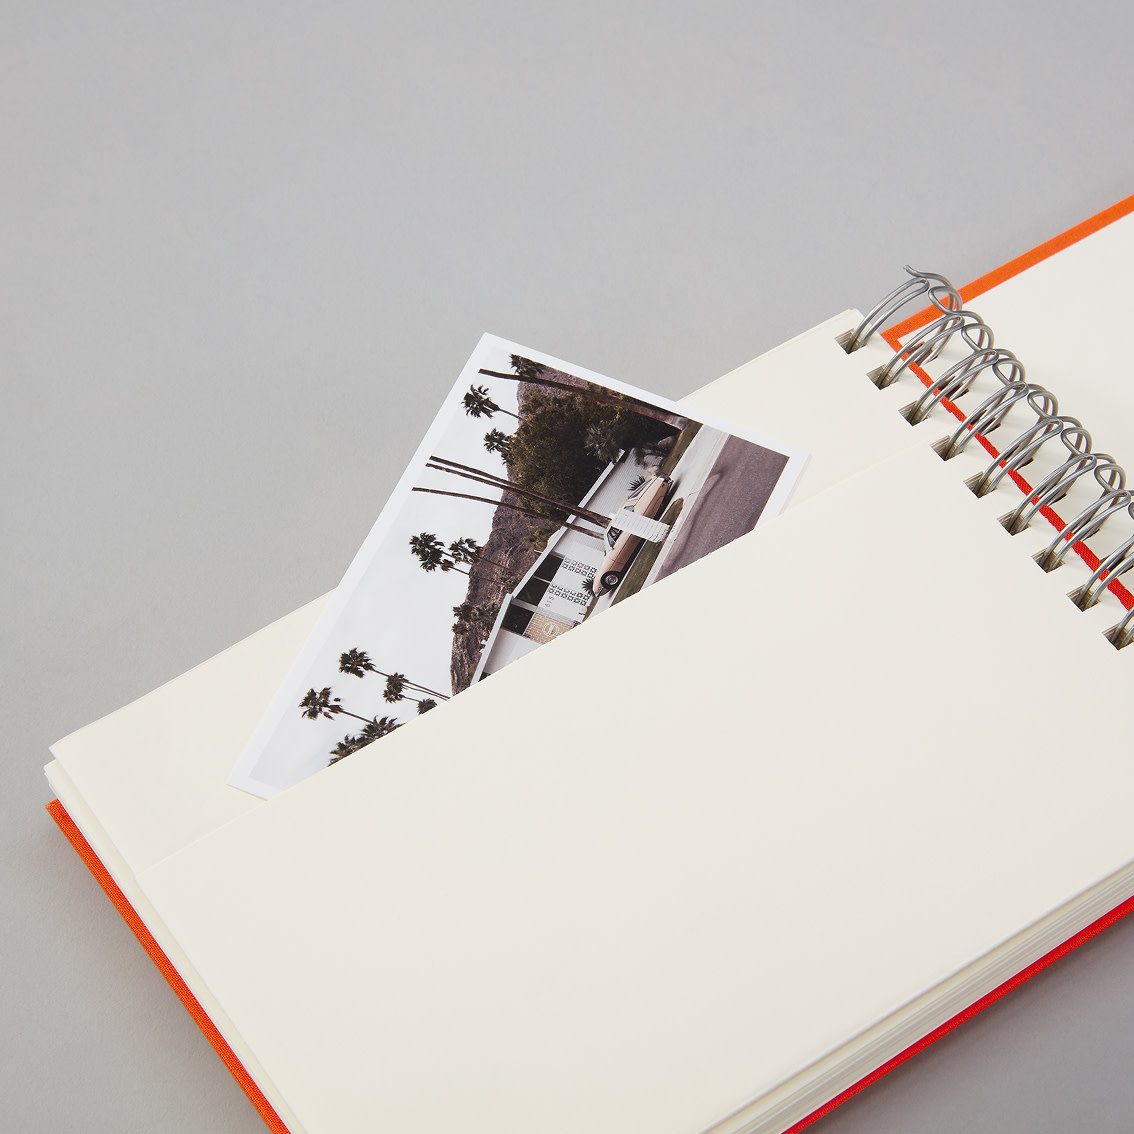 Album Photos traditionnel Prem'S 33,5x29cm 100 pages couleurs aléatoires -  Papeterie Michel